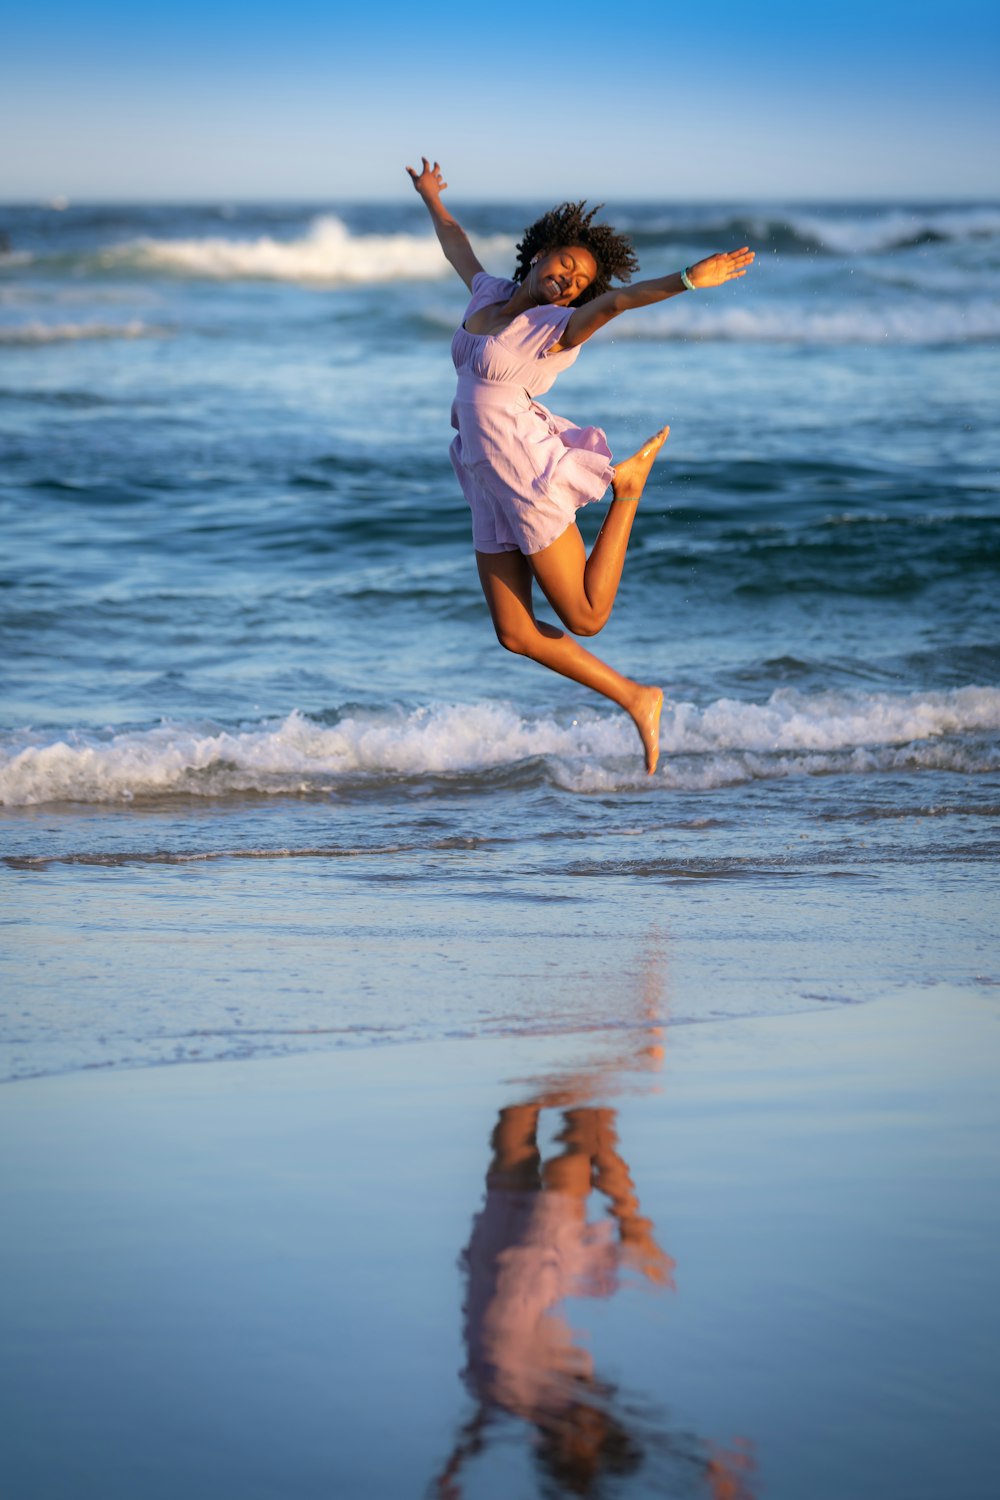 a man jumping in the air on a beach